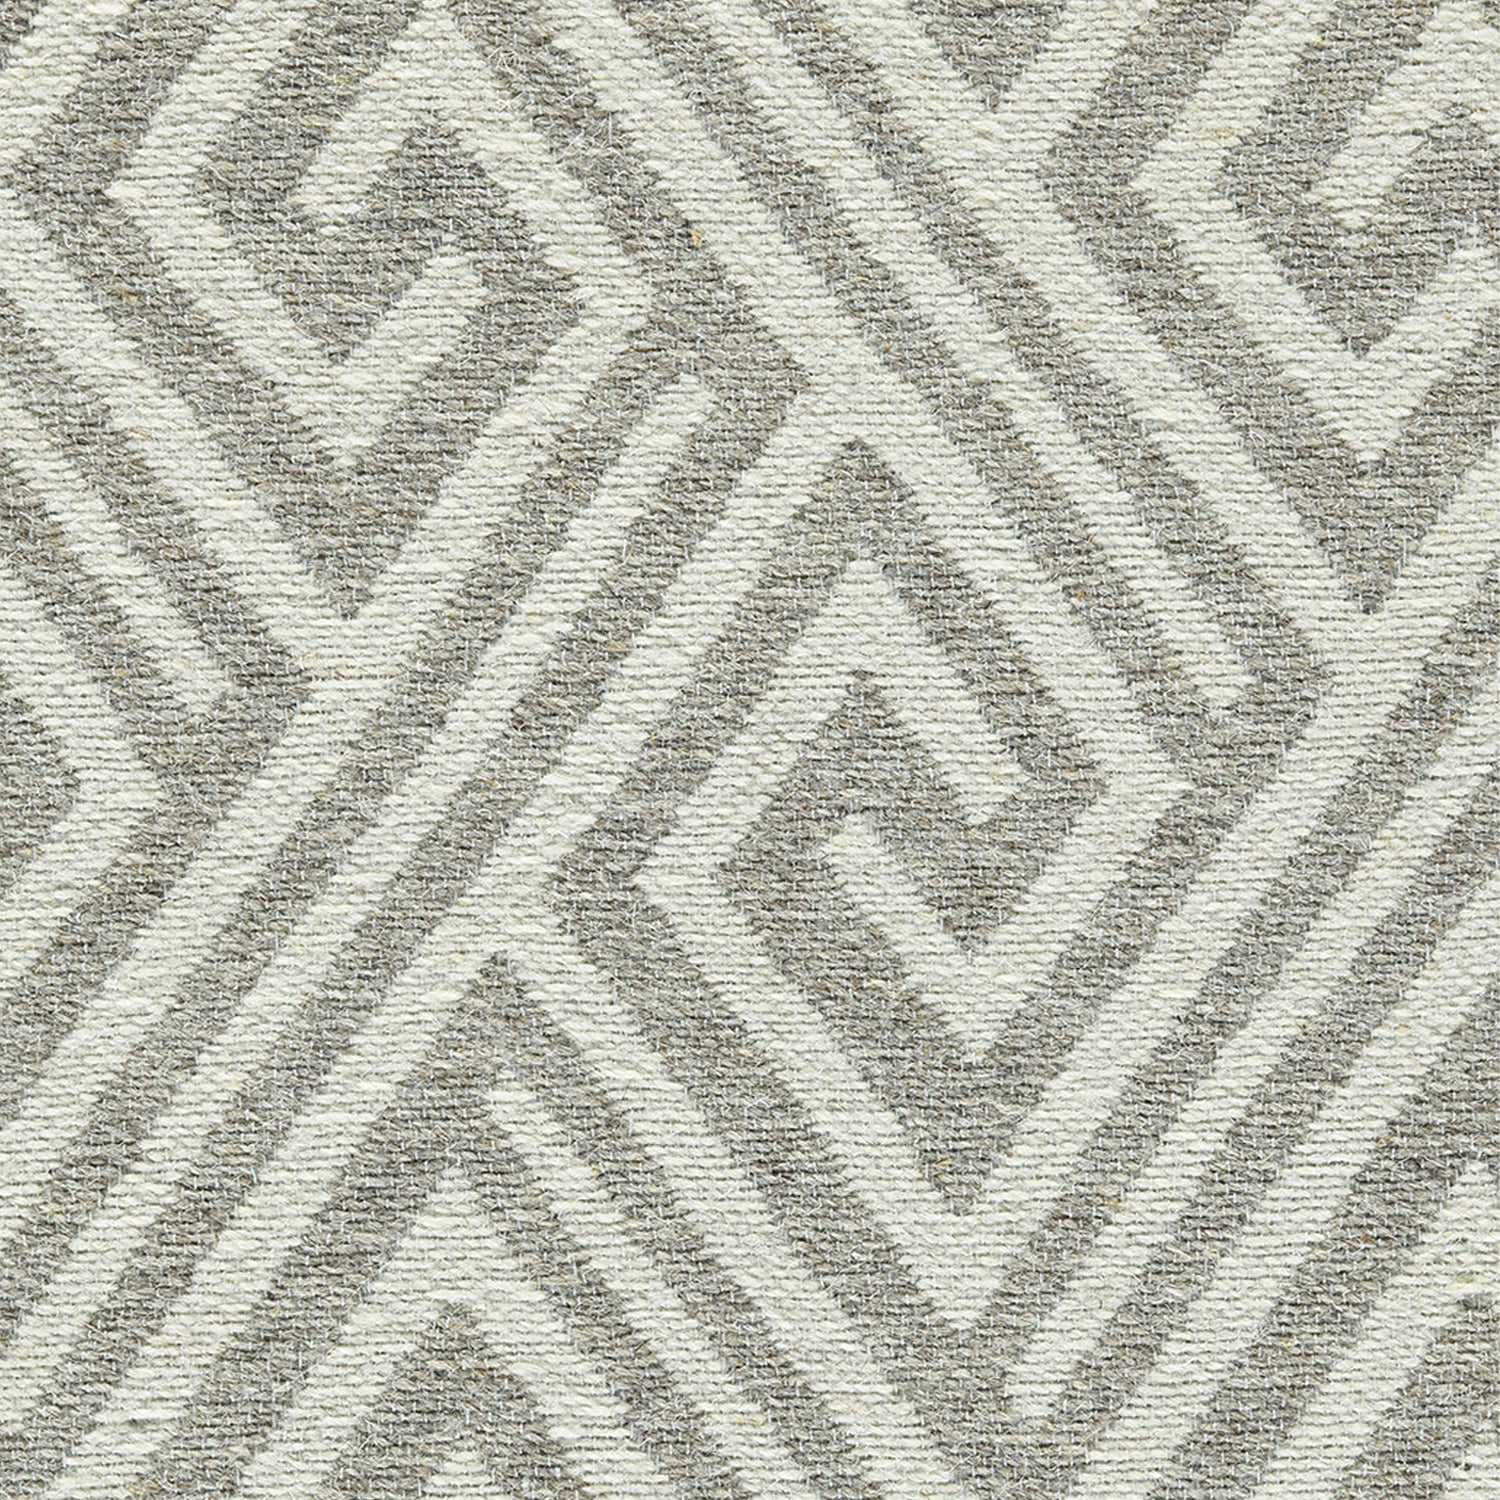 Wool-blend broadloom carpet swatch in an interlocking linear diamond pattern in cream and silver.